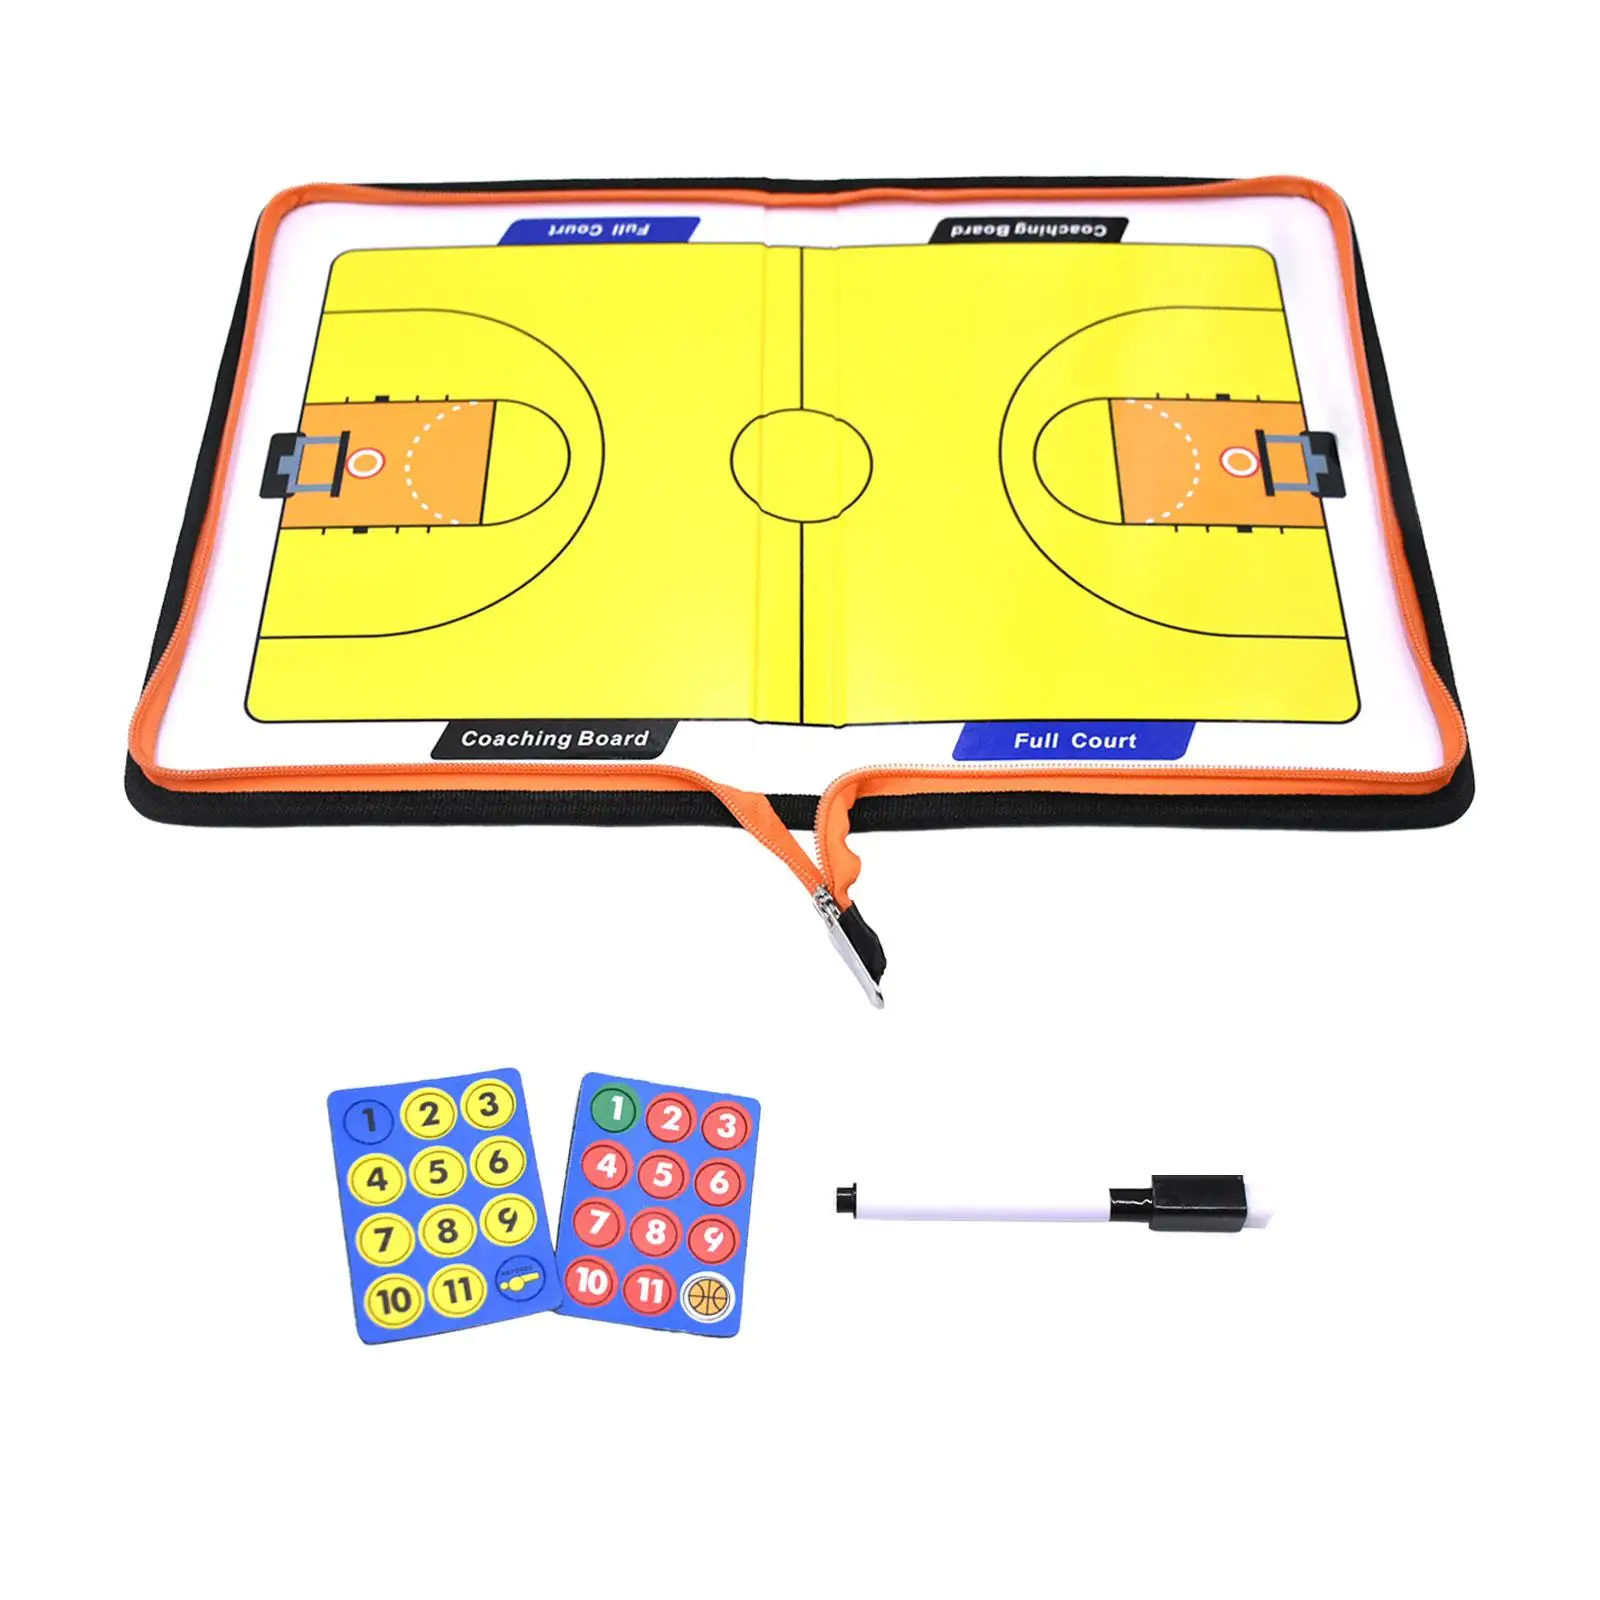 Баскетбольная тренерская доска с застежкой-молнией, сложенный план, Демонстрационное игровое оборудование, Стираемый маркер, обучающий буфер обмена, сухое стирание